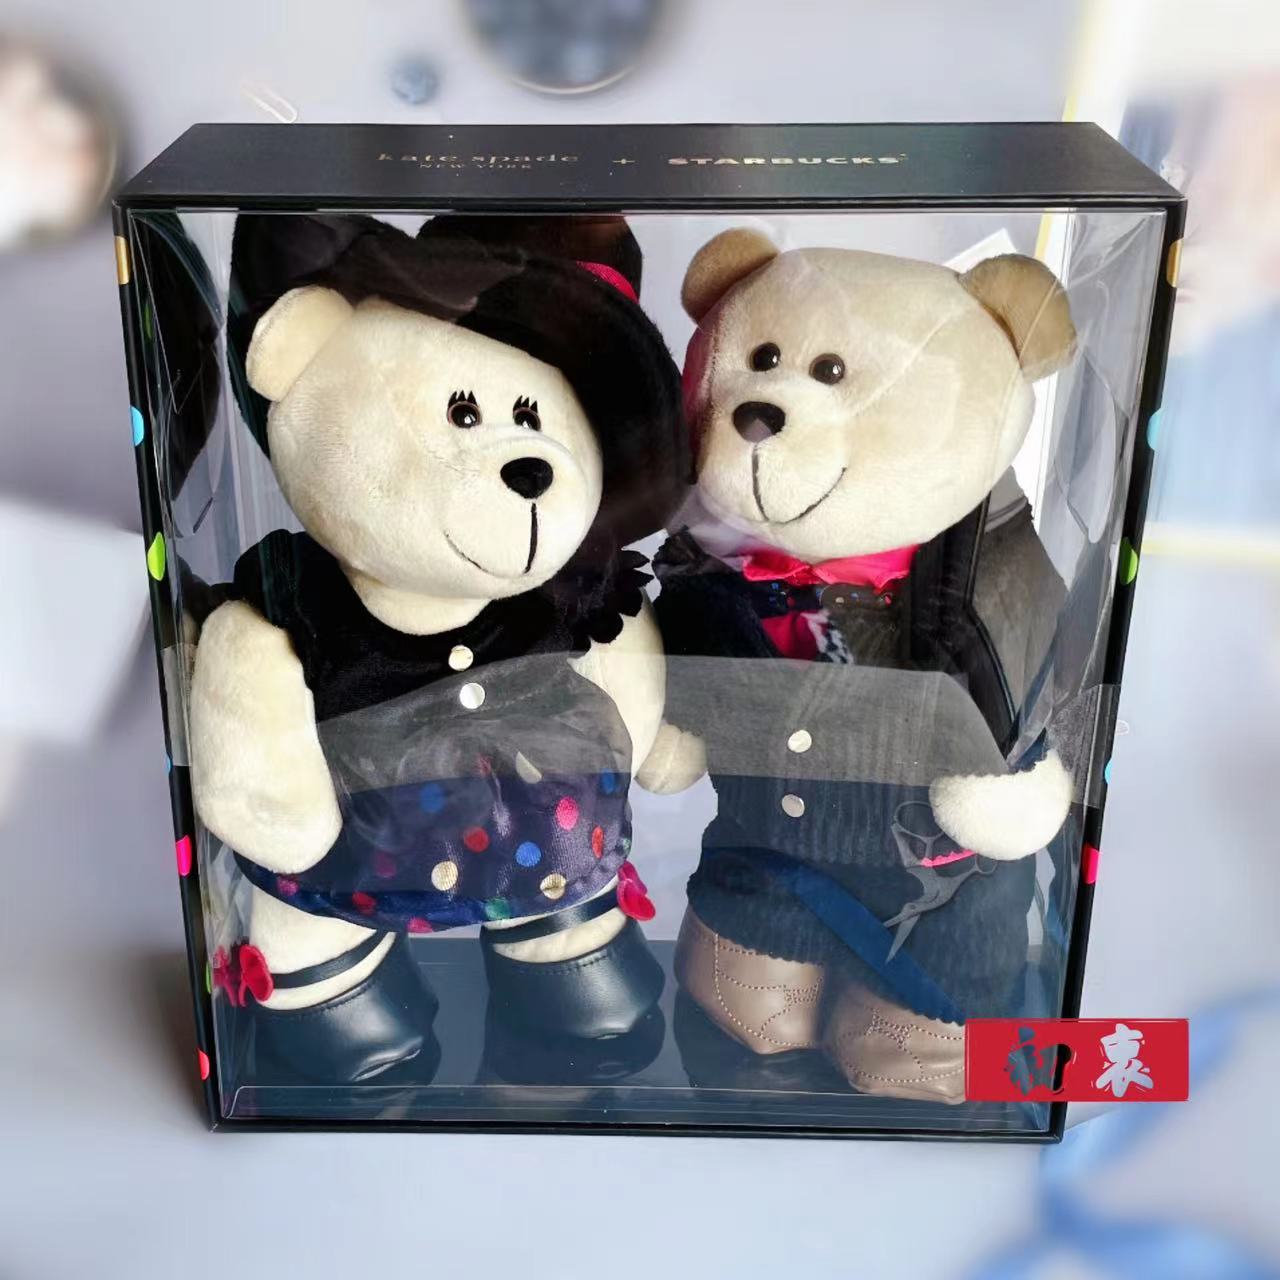 星巴克海外限定熊寶寶Kate Spade聯名款熊寶寶禮盒/男熊寶寶女熊寶寶